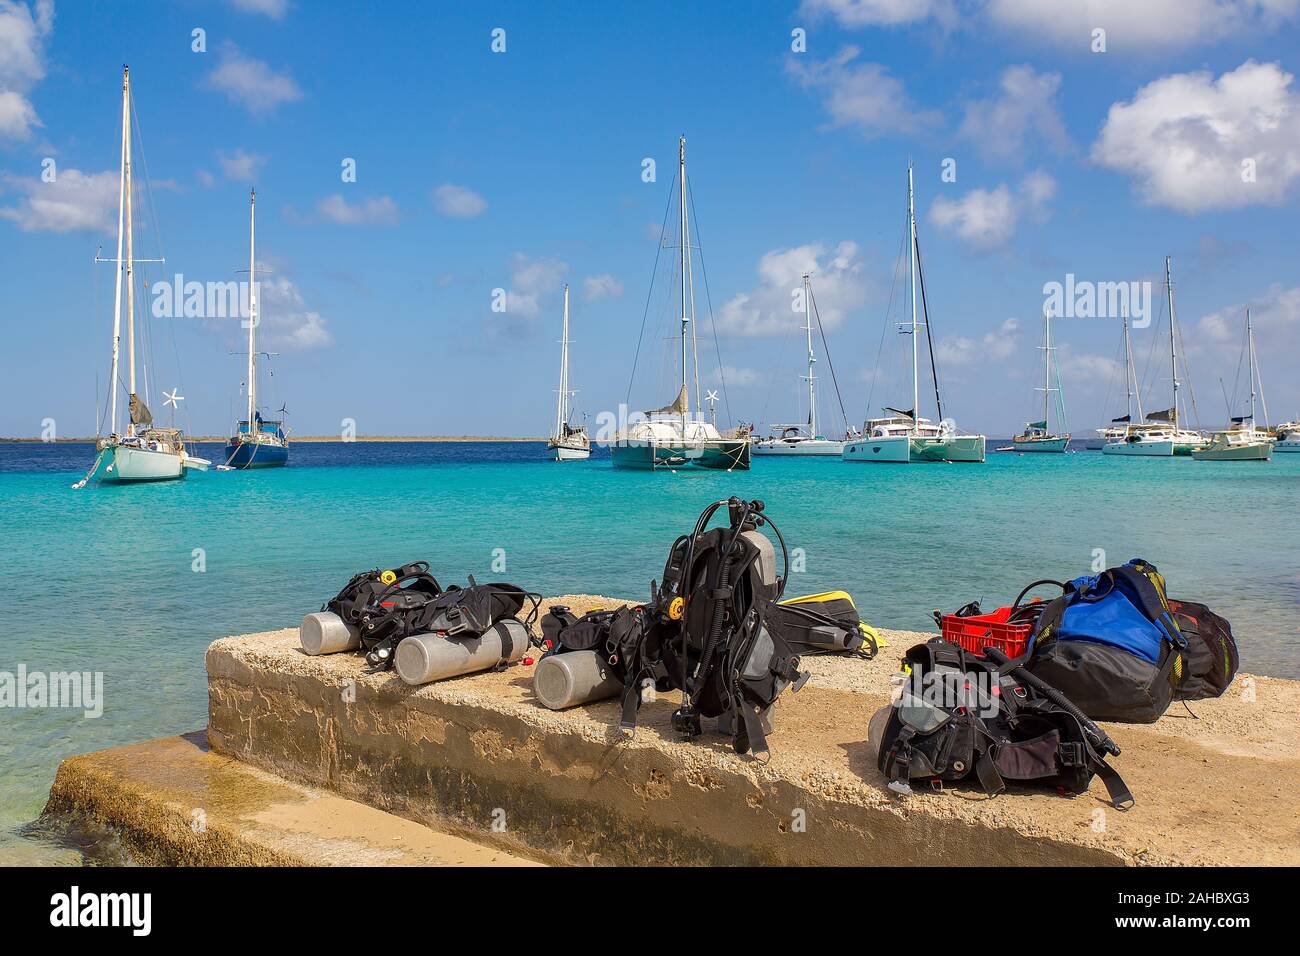 L'équipement de plongée des côtes de Bonaire avec la mer sur des bateaux à voile Banque D'Images